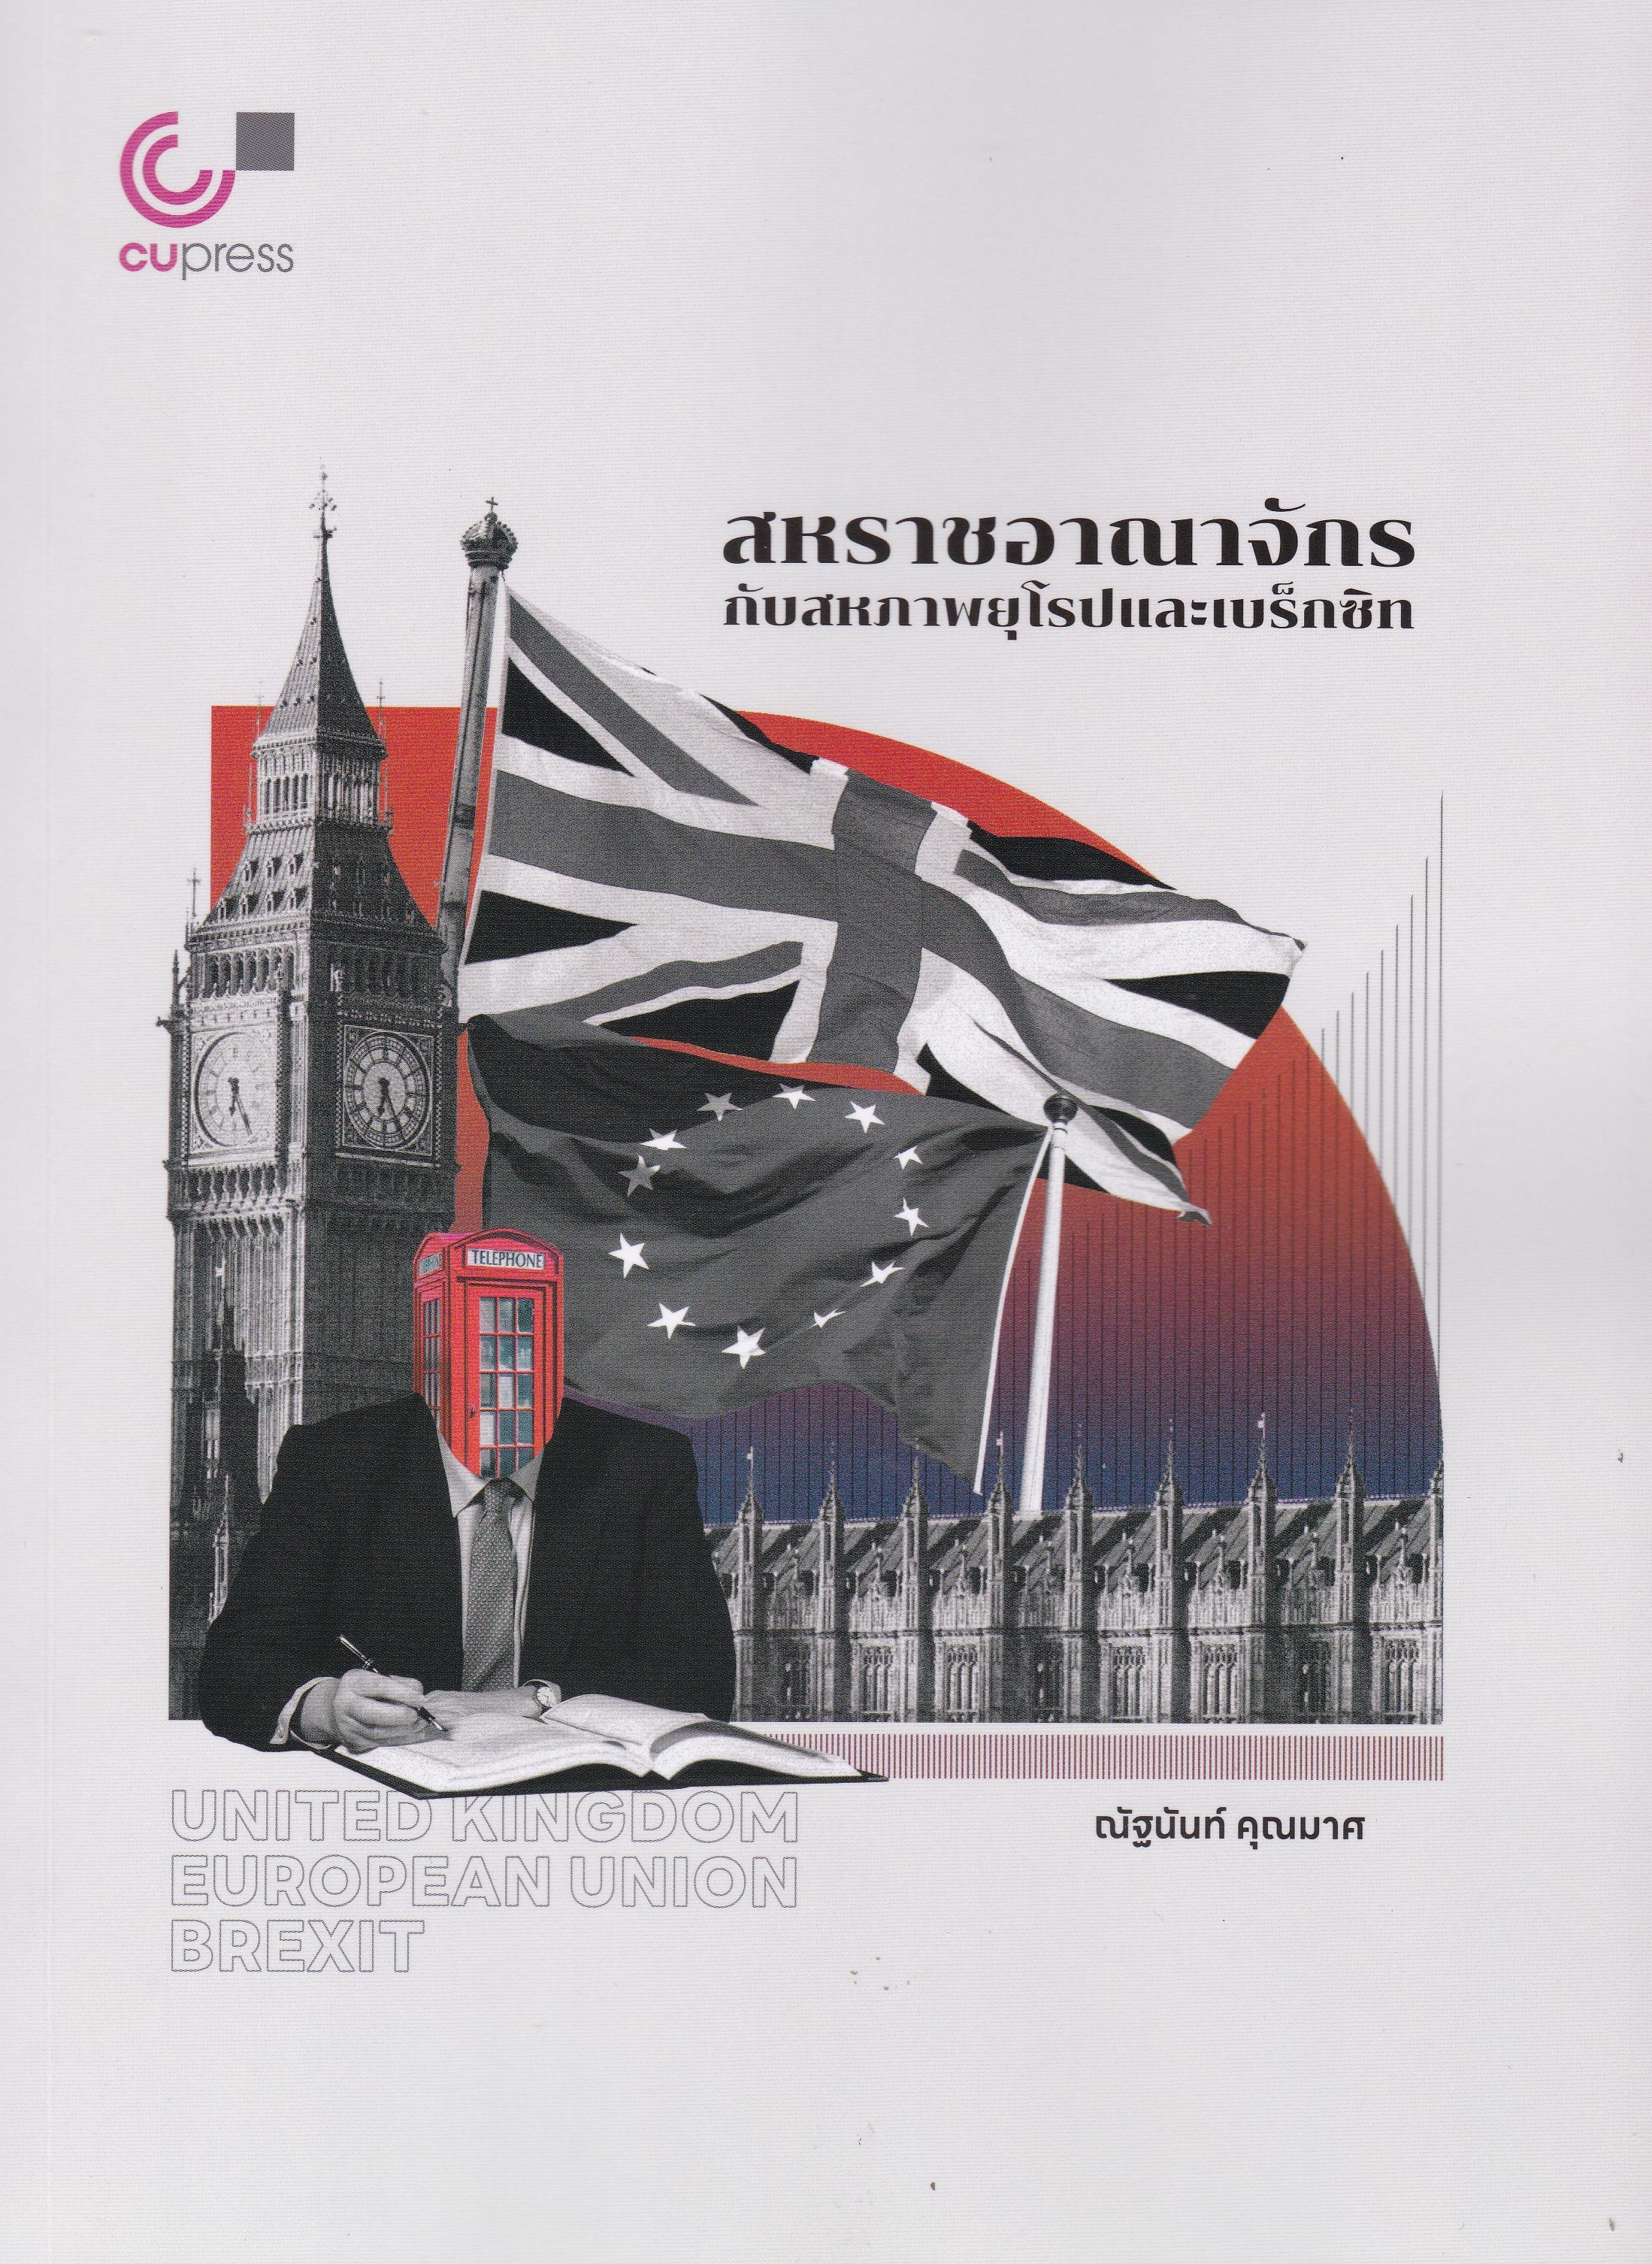 สหราชอาณาจักรกับสหภาพยุโรปและเบร็กซิท (UNITED KINGDOM EUROPEAN UNION BREXIT)